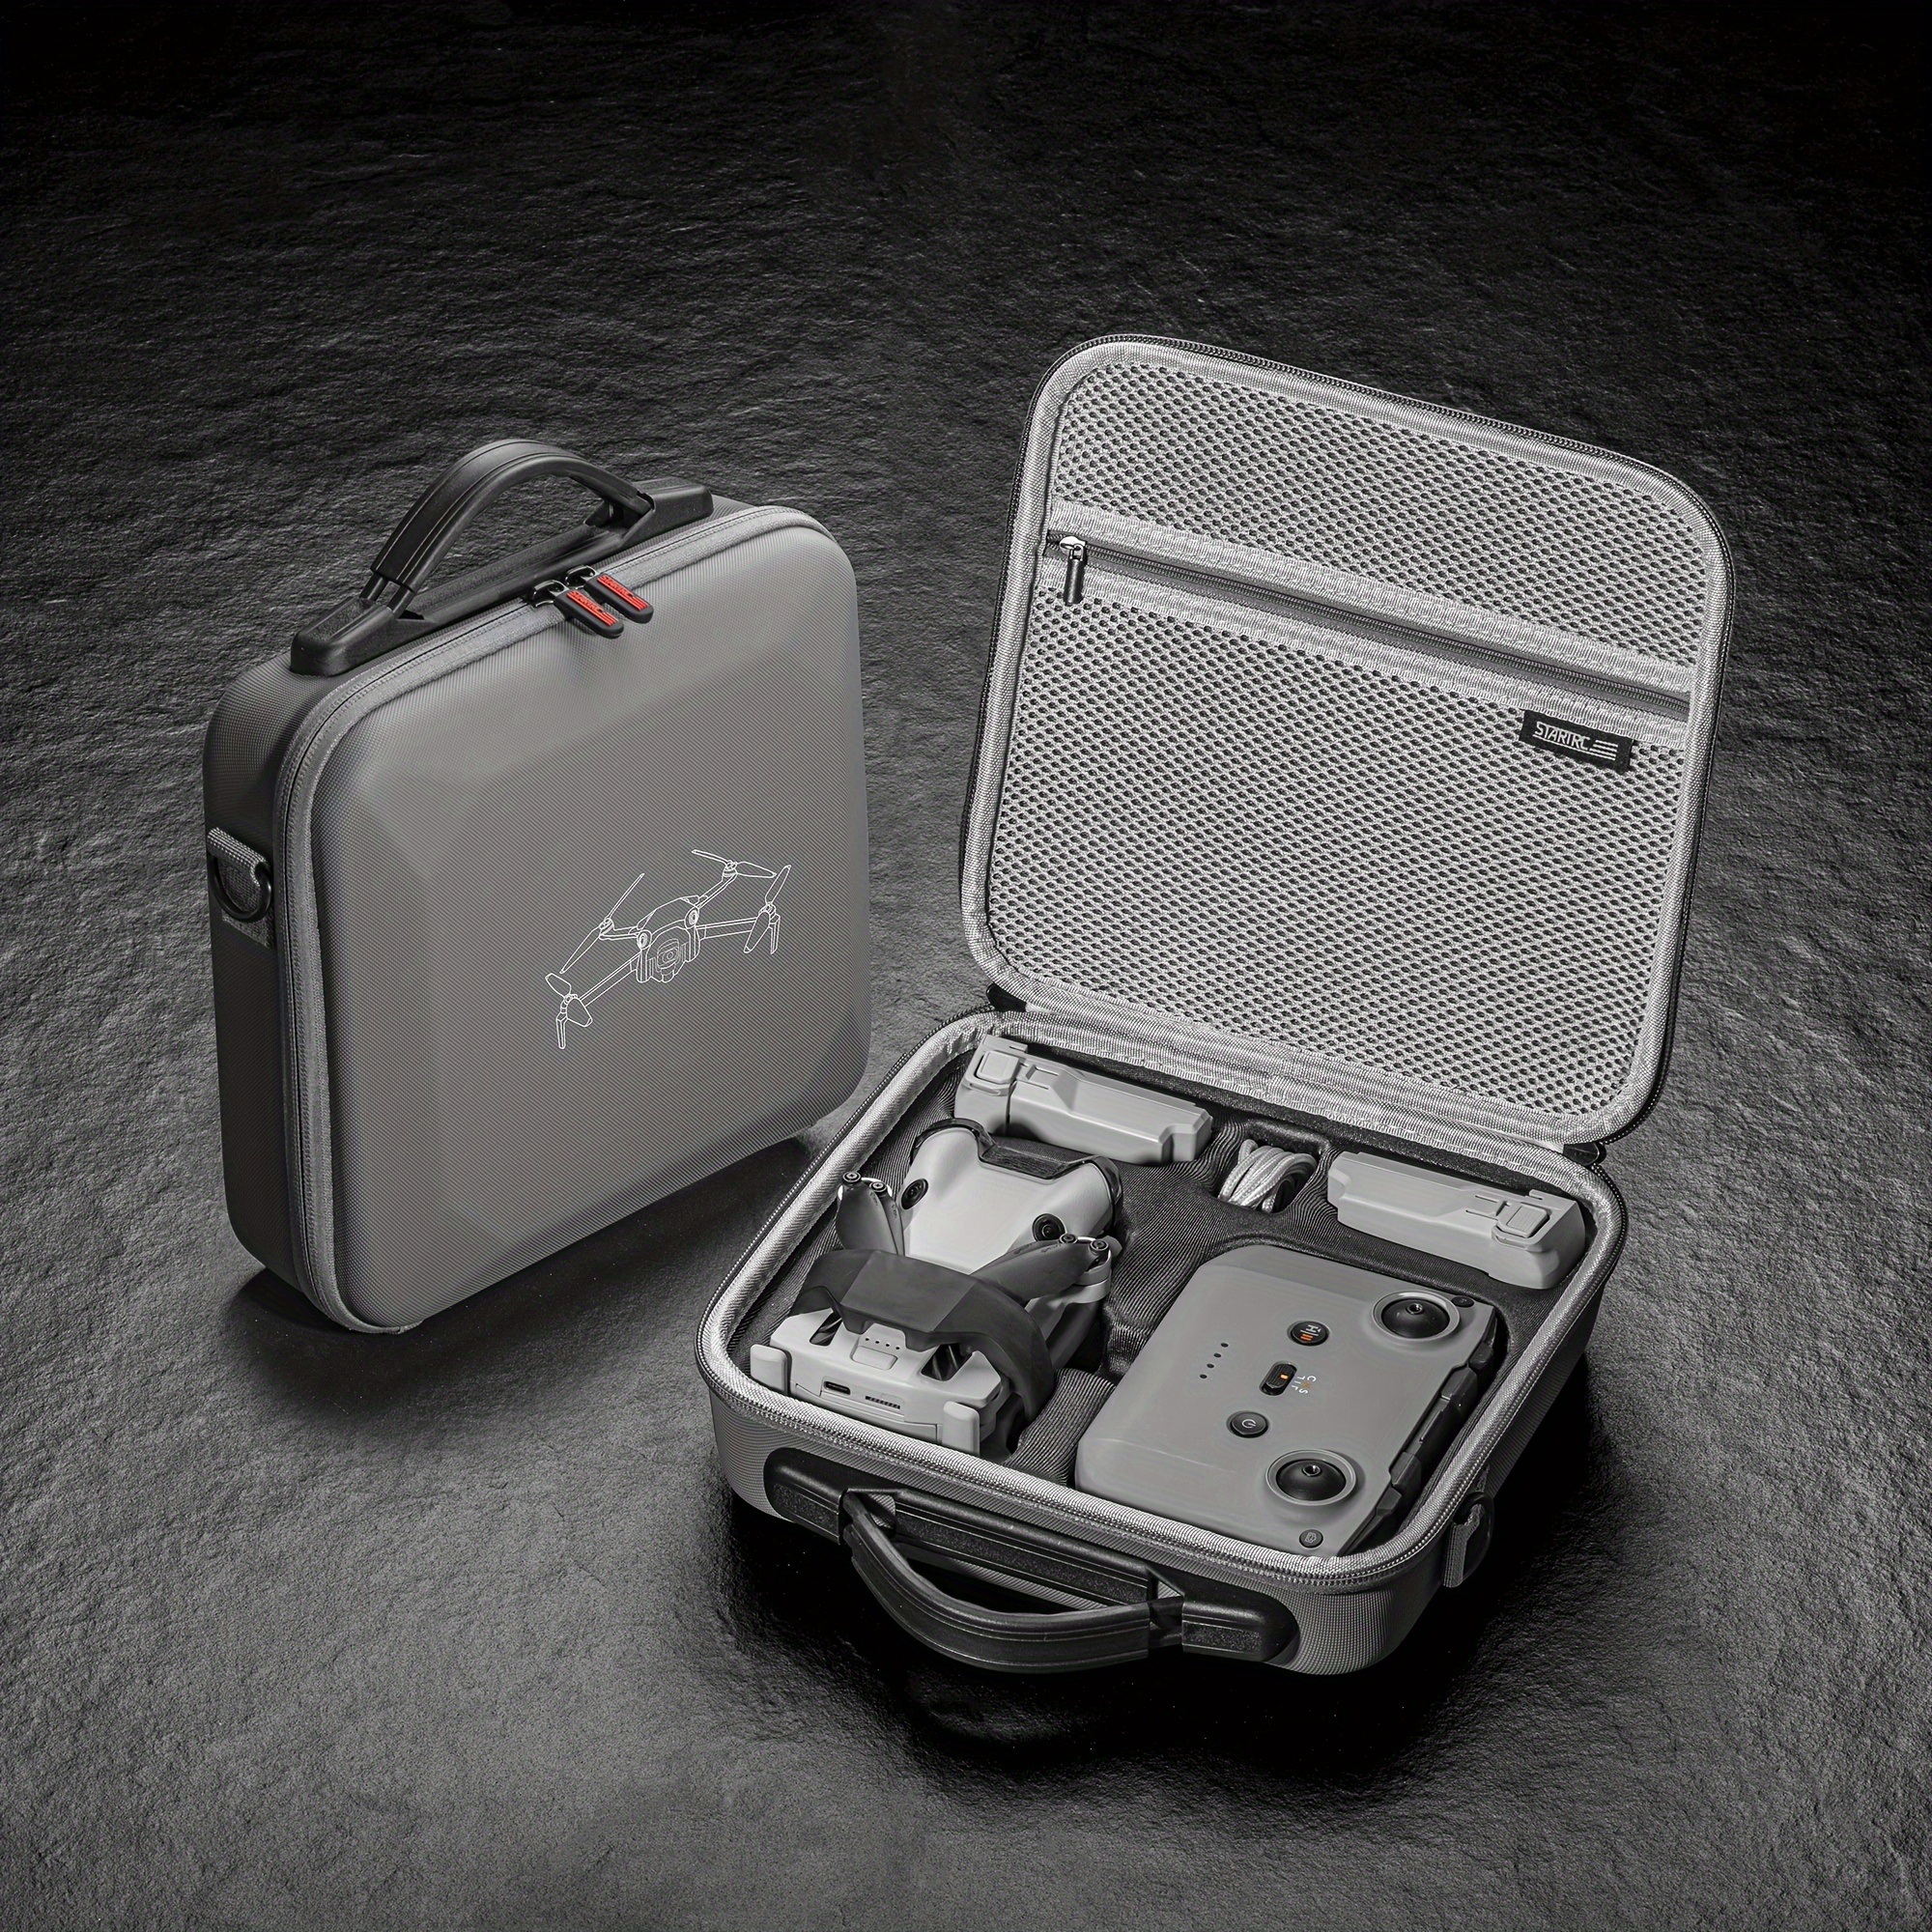 Accesorios para Dron con filtro para DJI Mini 4 Pro, Kit Protector